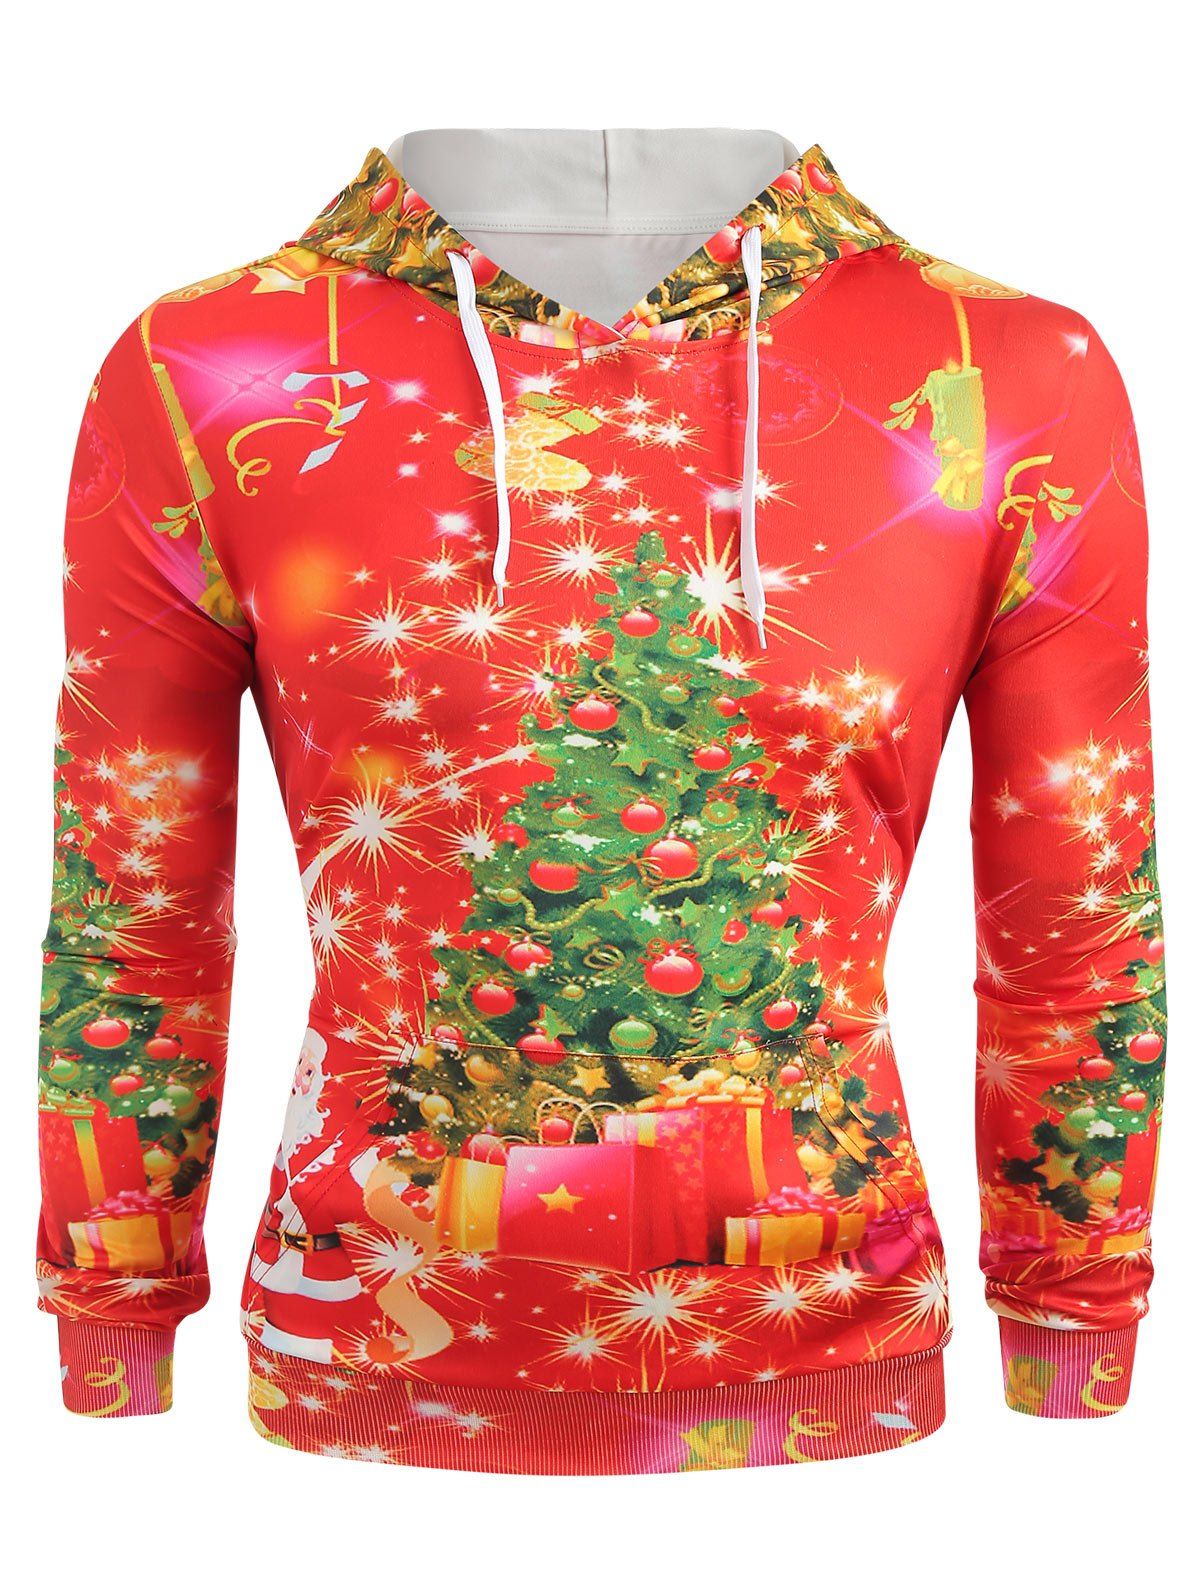 Sweat-Shirt à Capuche Manches Longues avec Imprimé Sapin de Noël - Rouge XL